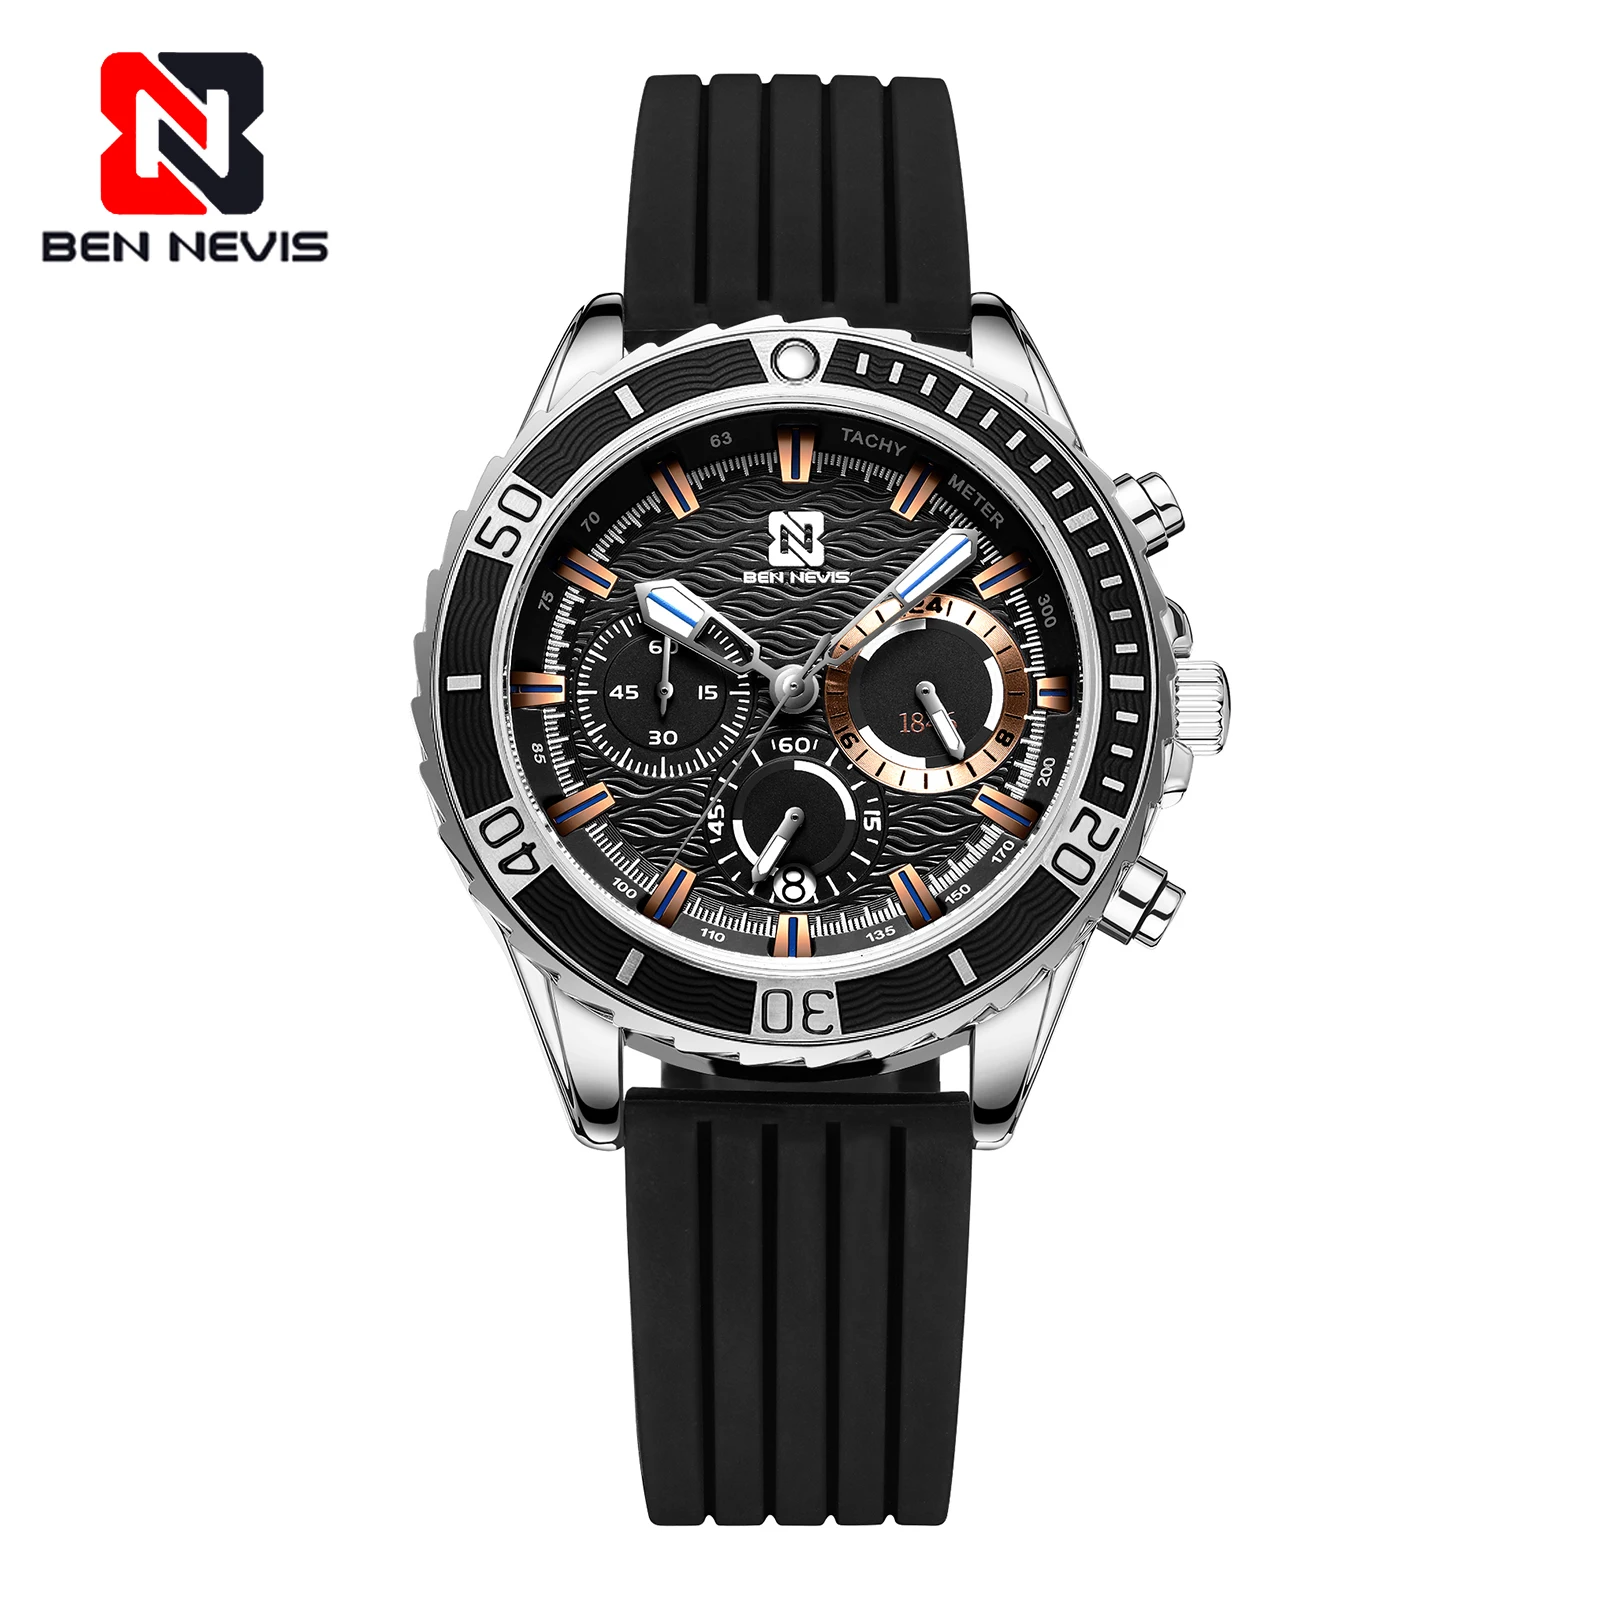 Ben Nevis мужские часы Роскошные спортивные Бизнес кварцевые часы военные наручные часы силиконовый ремешок мужские часы relogio подарок A5 - Цвет: Black